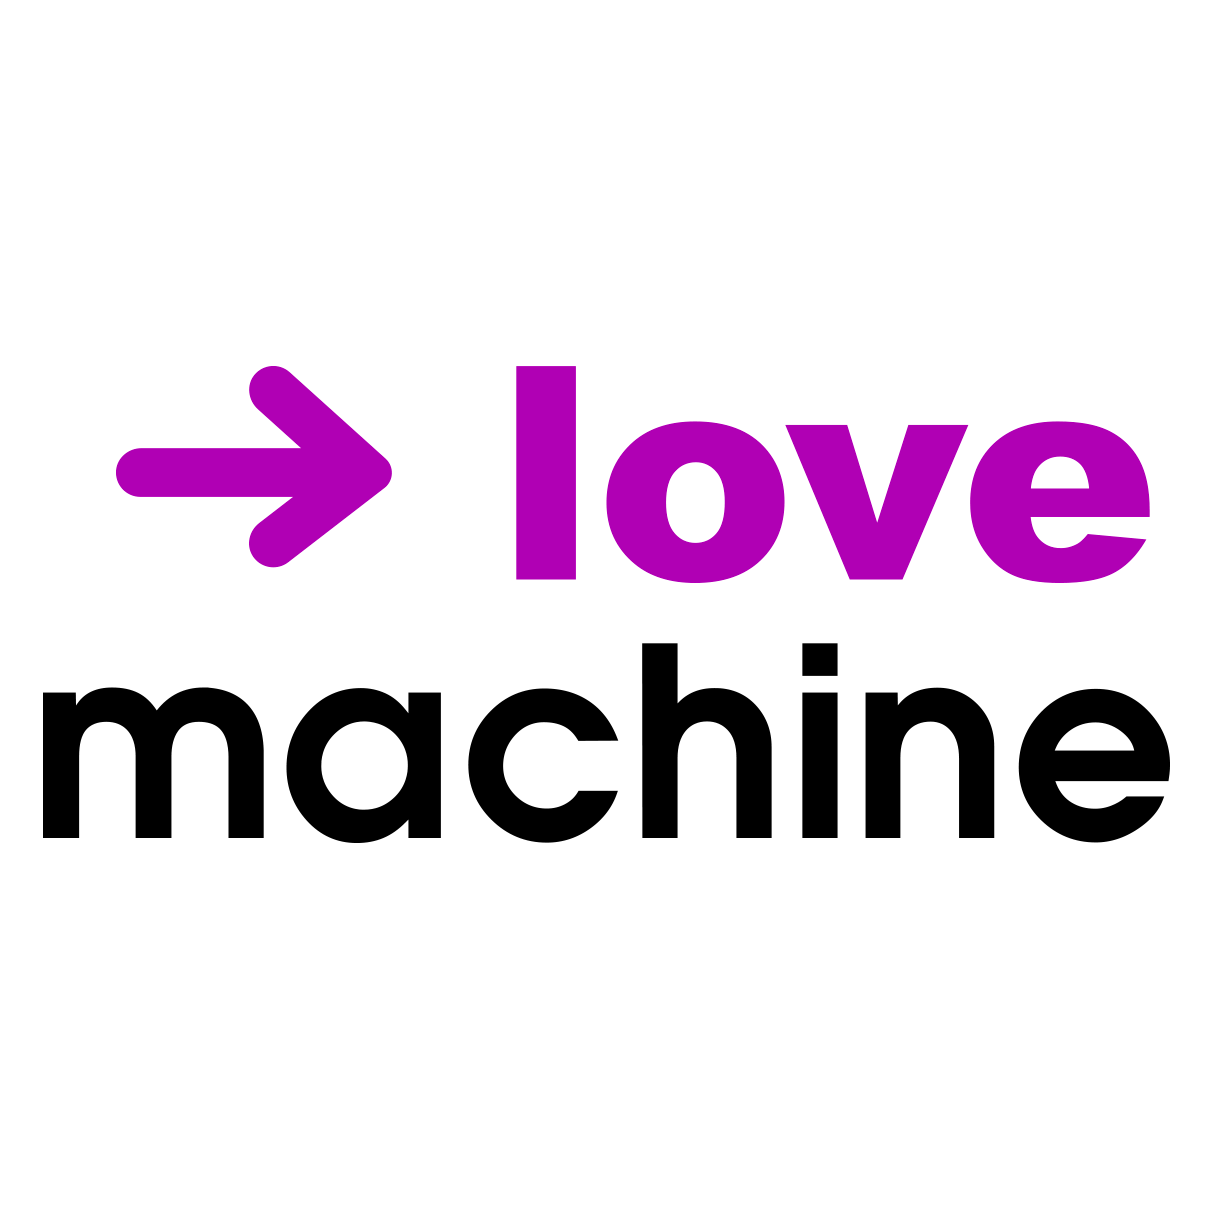 T-shirt love machine